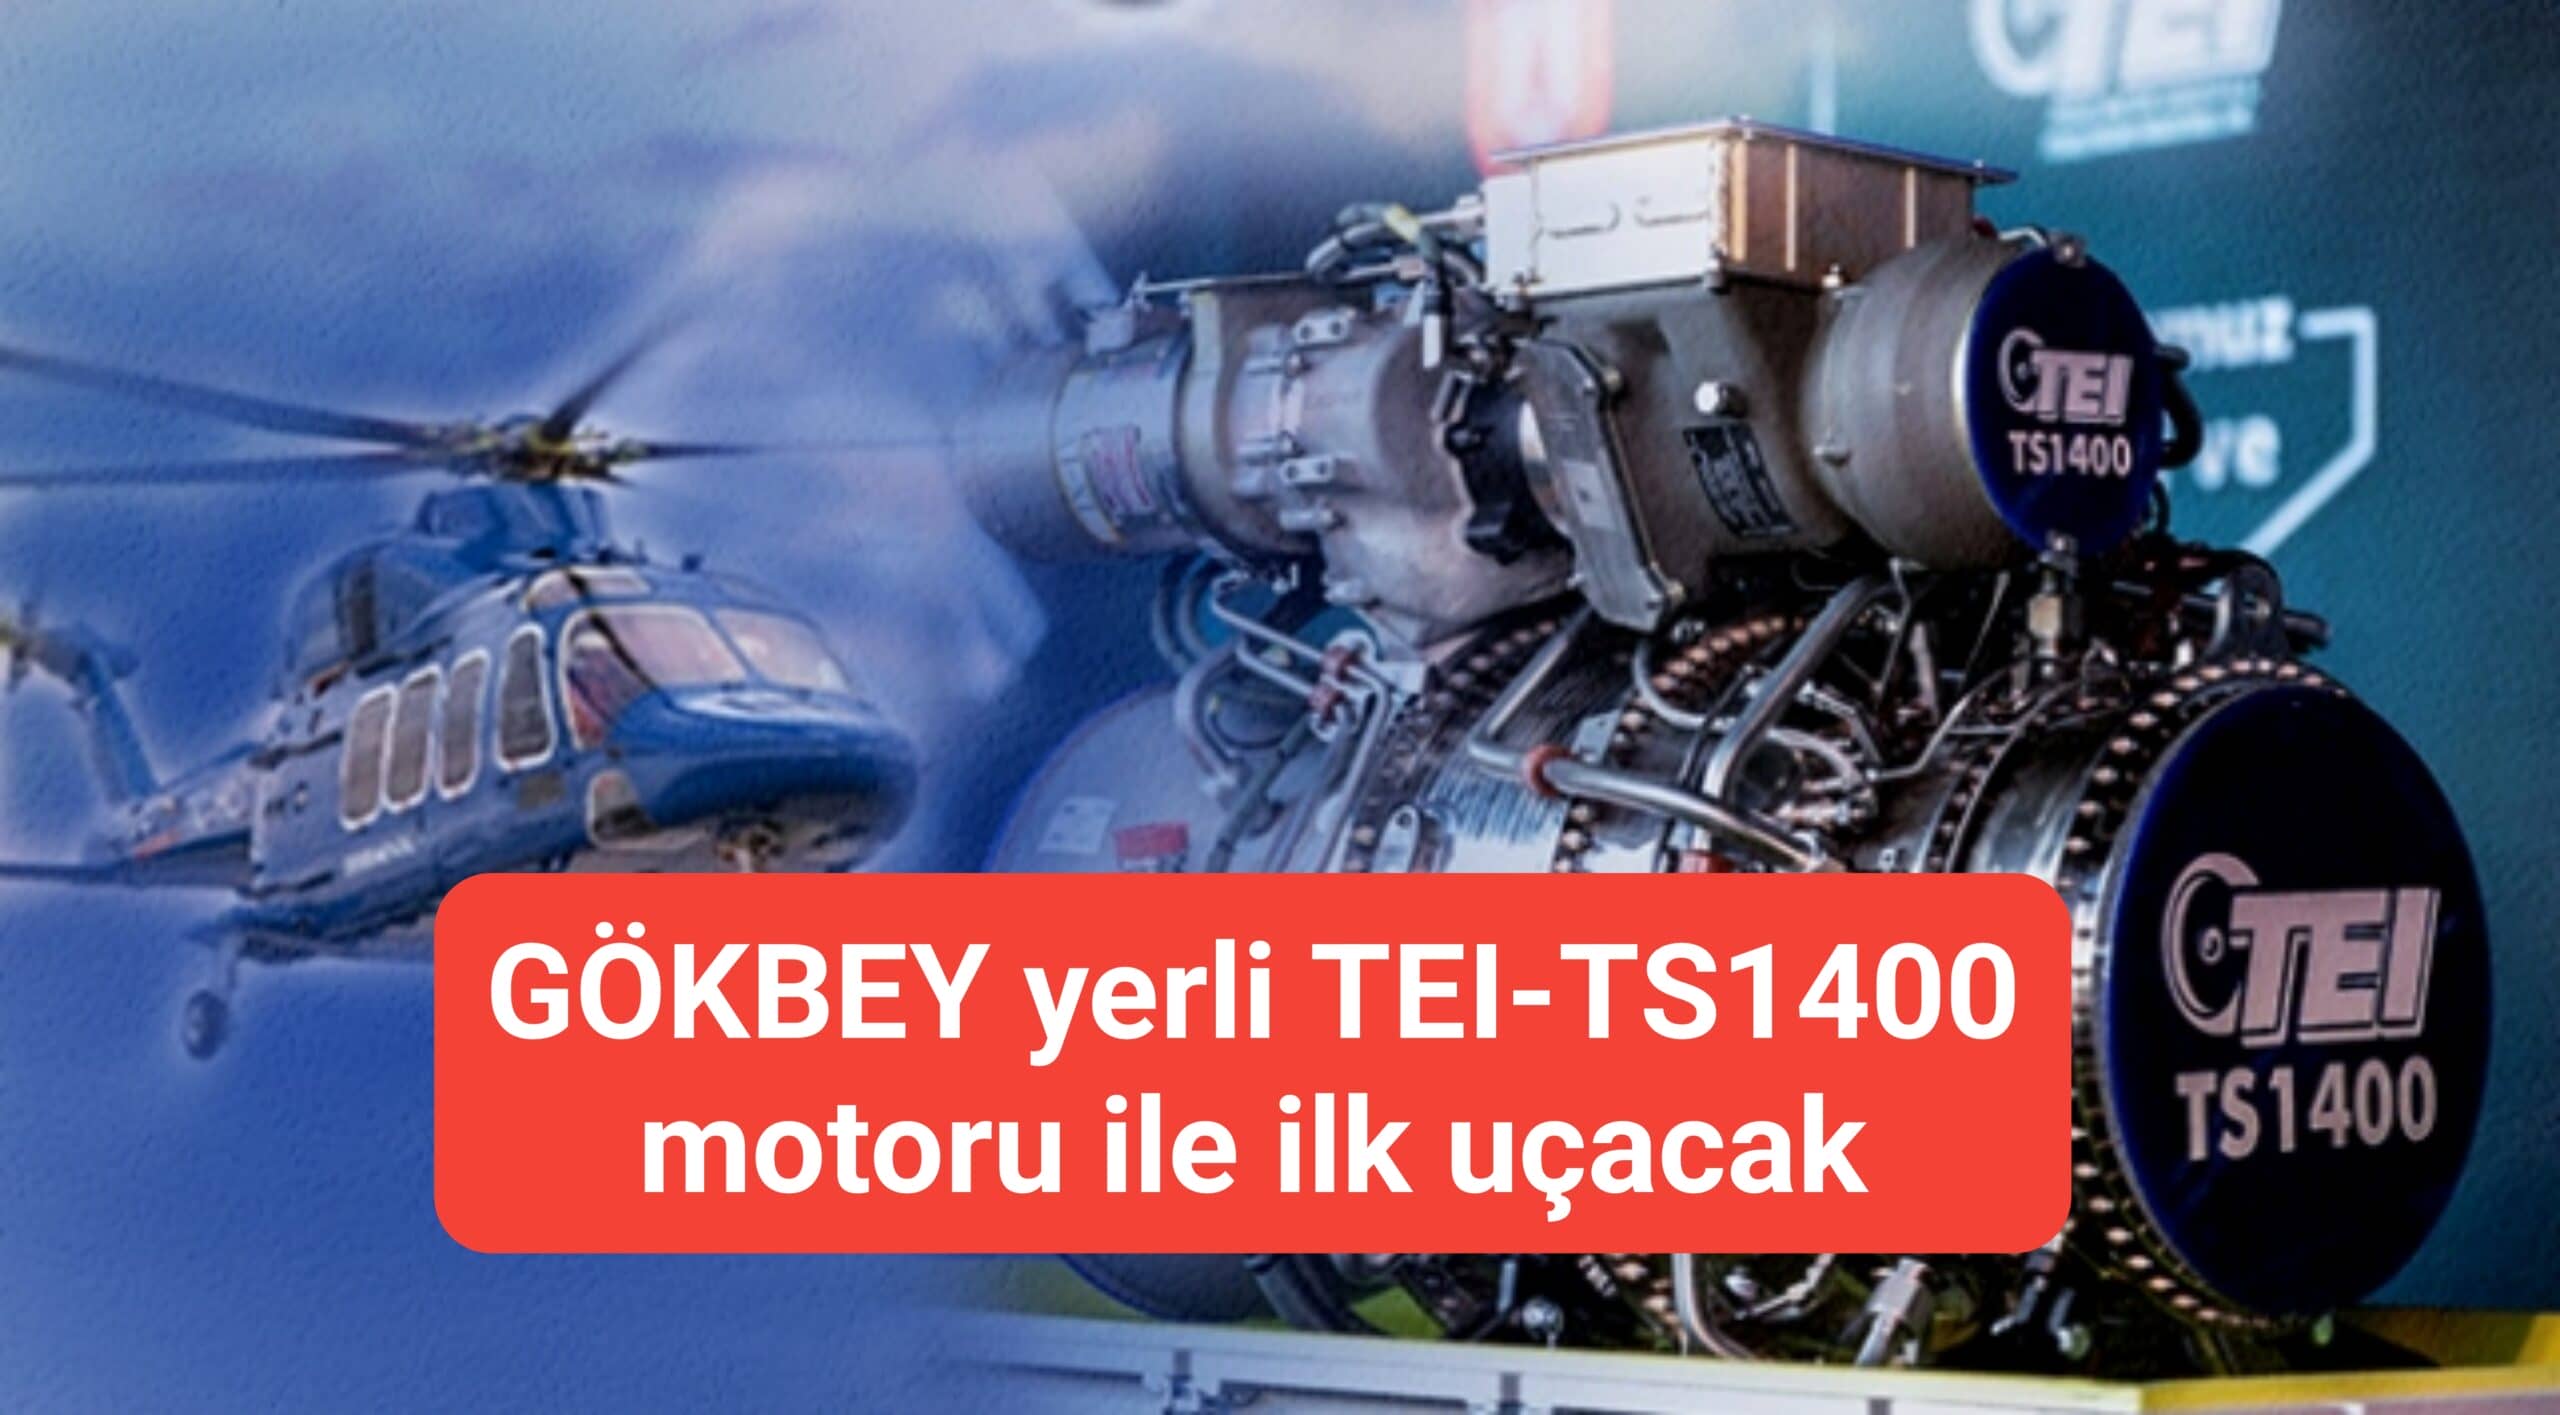 GÖKBEY yerli TEI-TS1400 motoru ile ilk uçacak